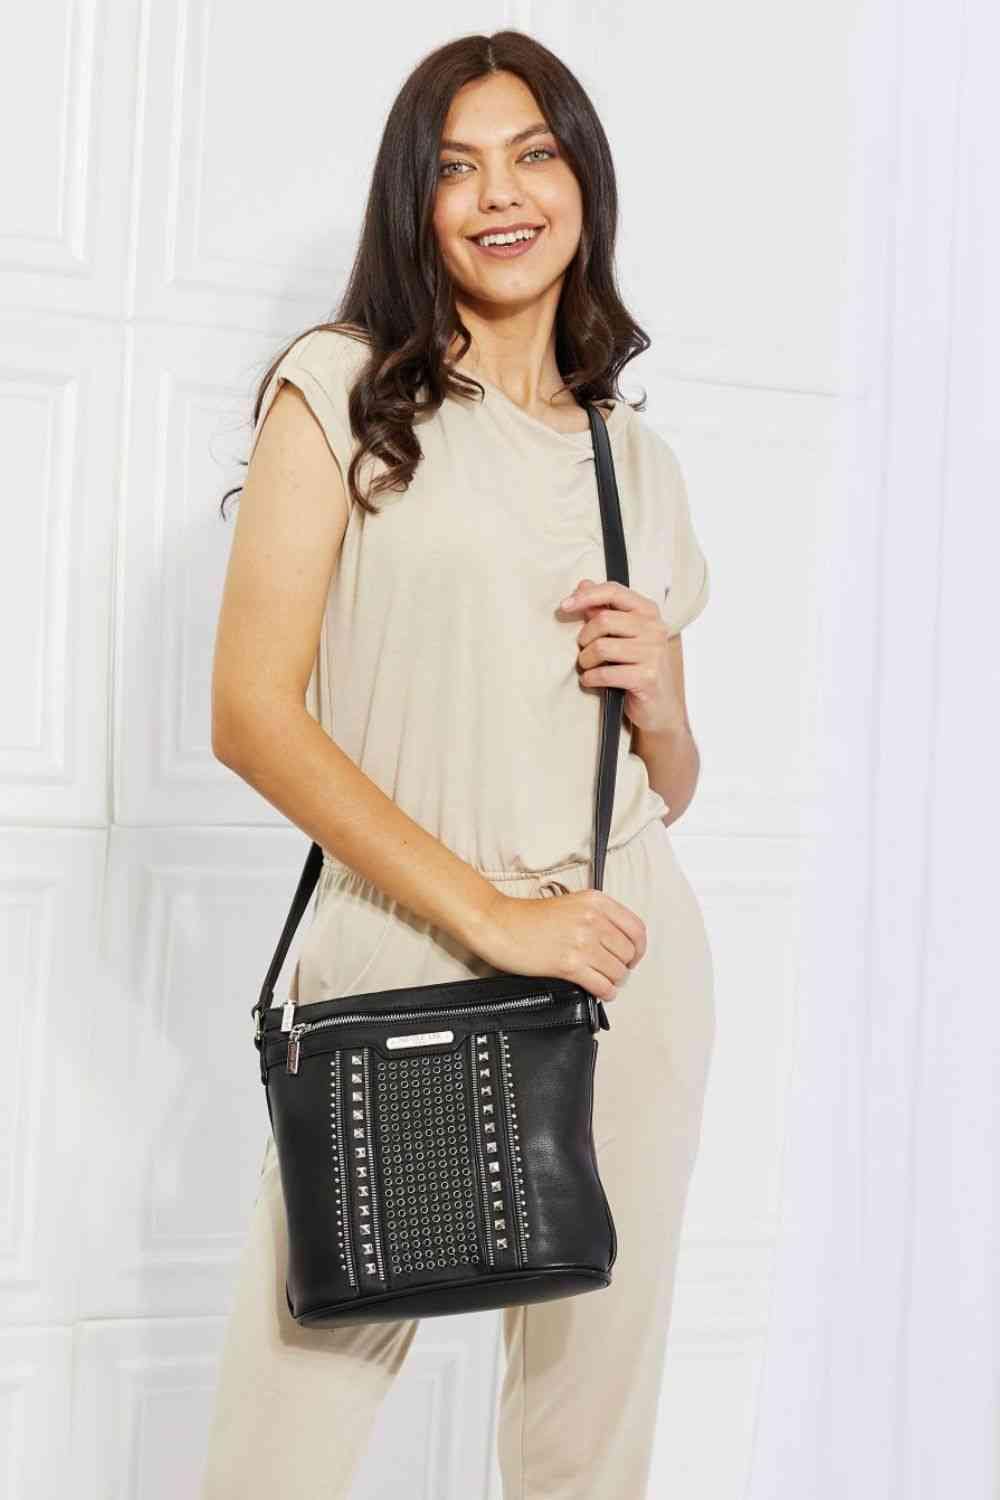 The802Gypsy Handbags, Wallets & Cases Black / One Size GYPSY-Nicole Lee USA-Handbag